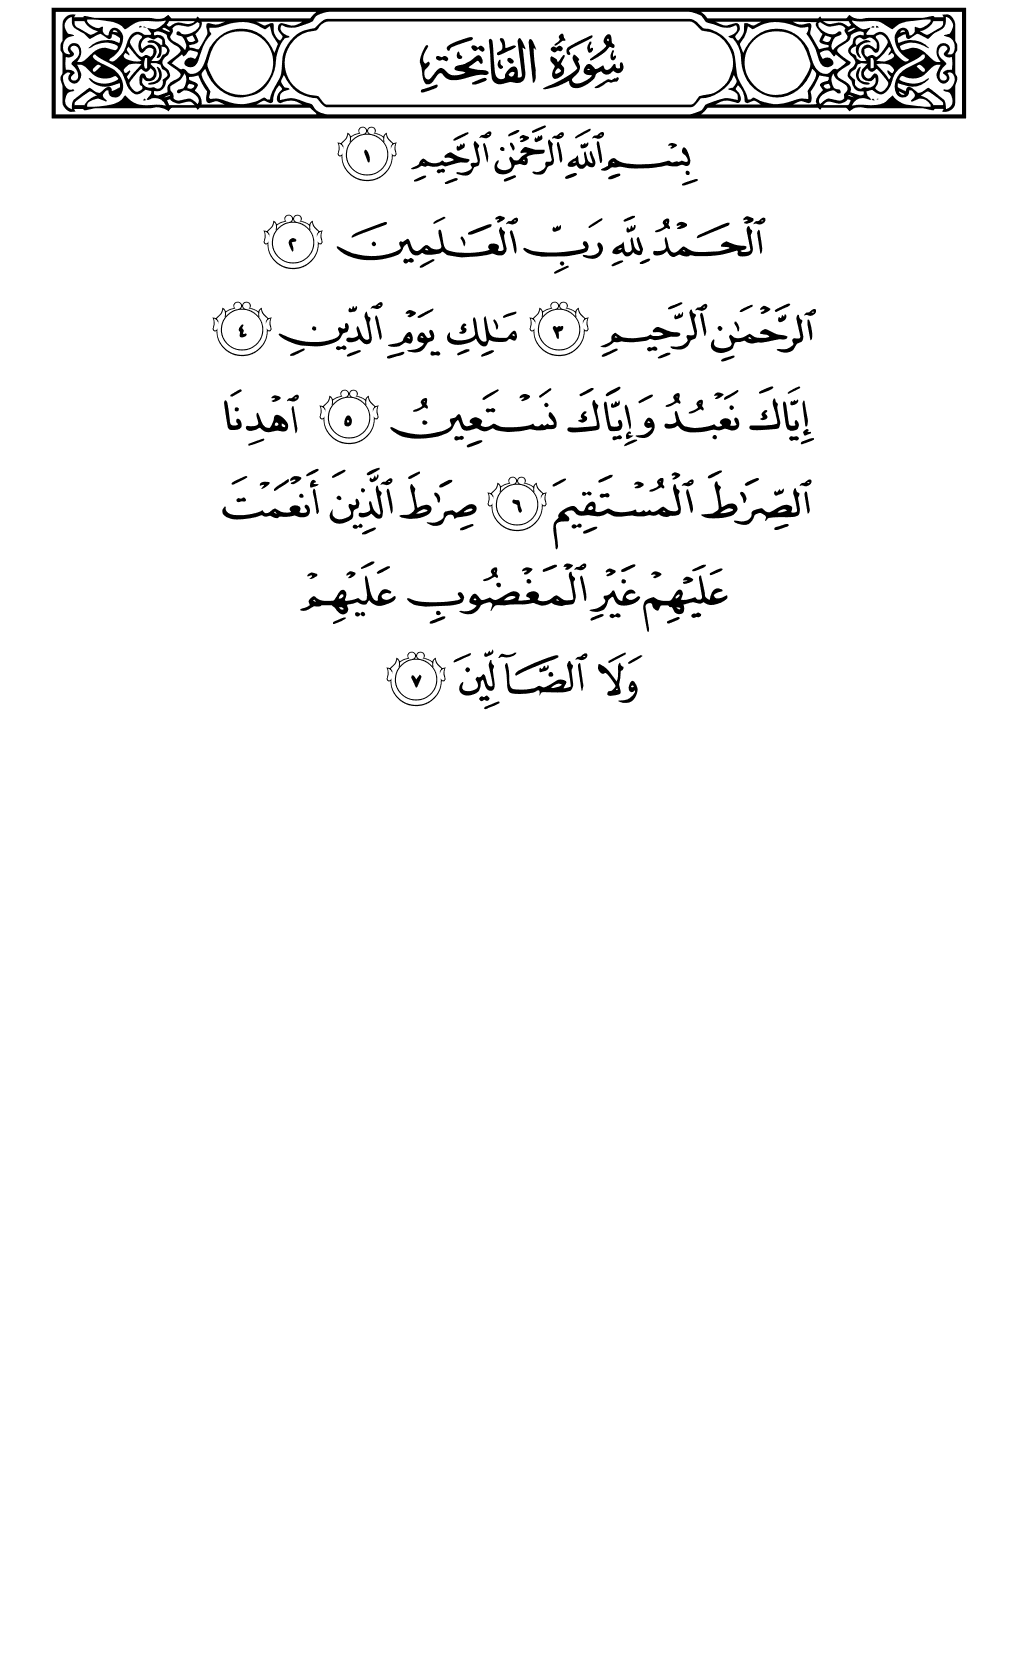 الصفحة رقم 1 من القرآن الكريم